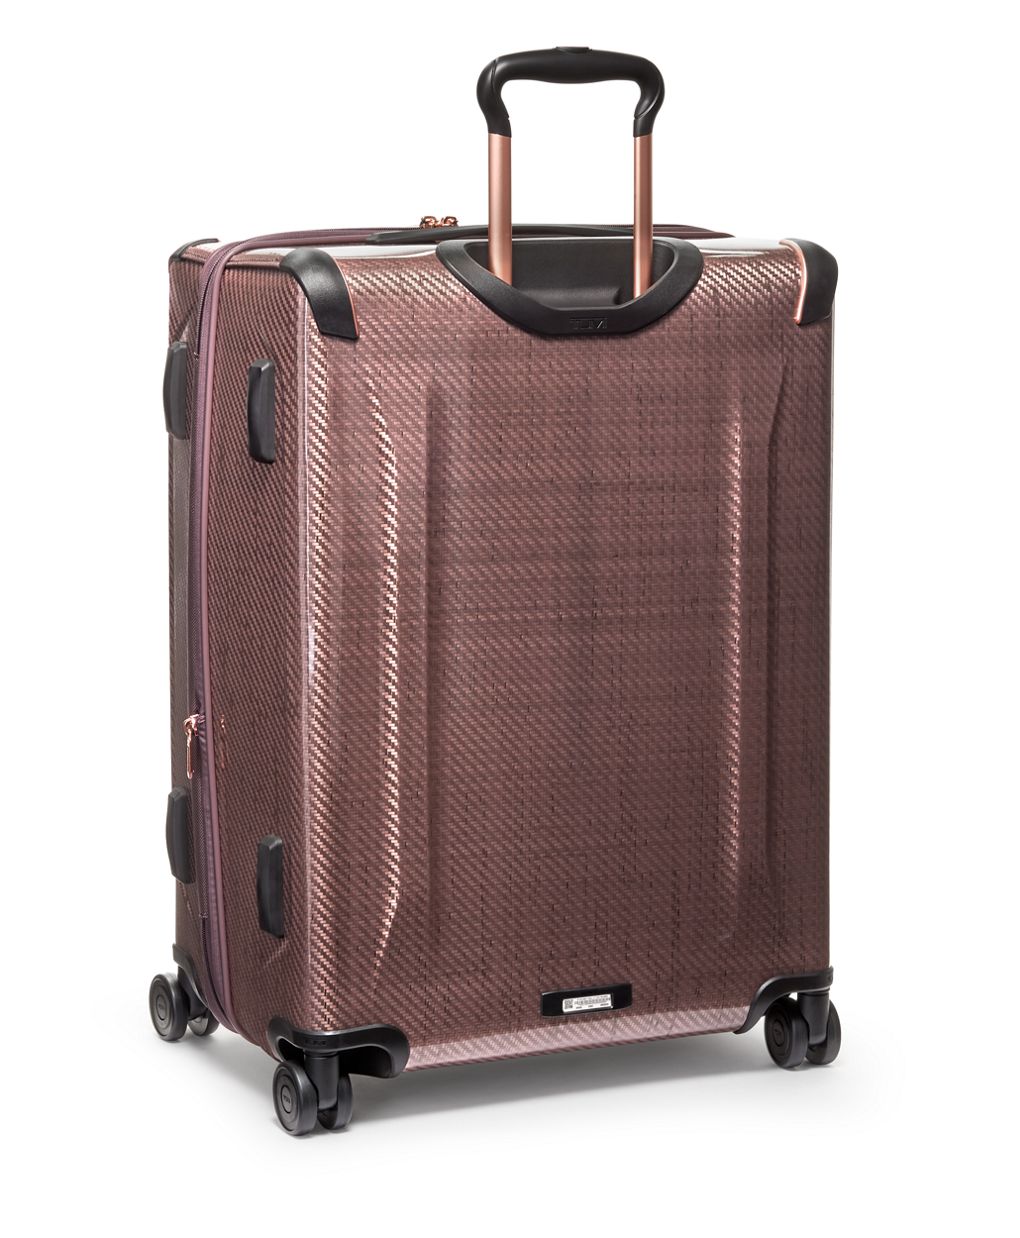 Buy PUJI Nylon Large Capacity Folding Travel Bag, Travel